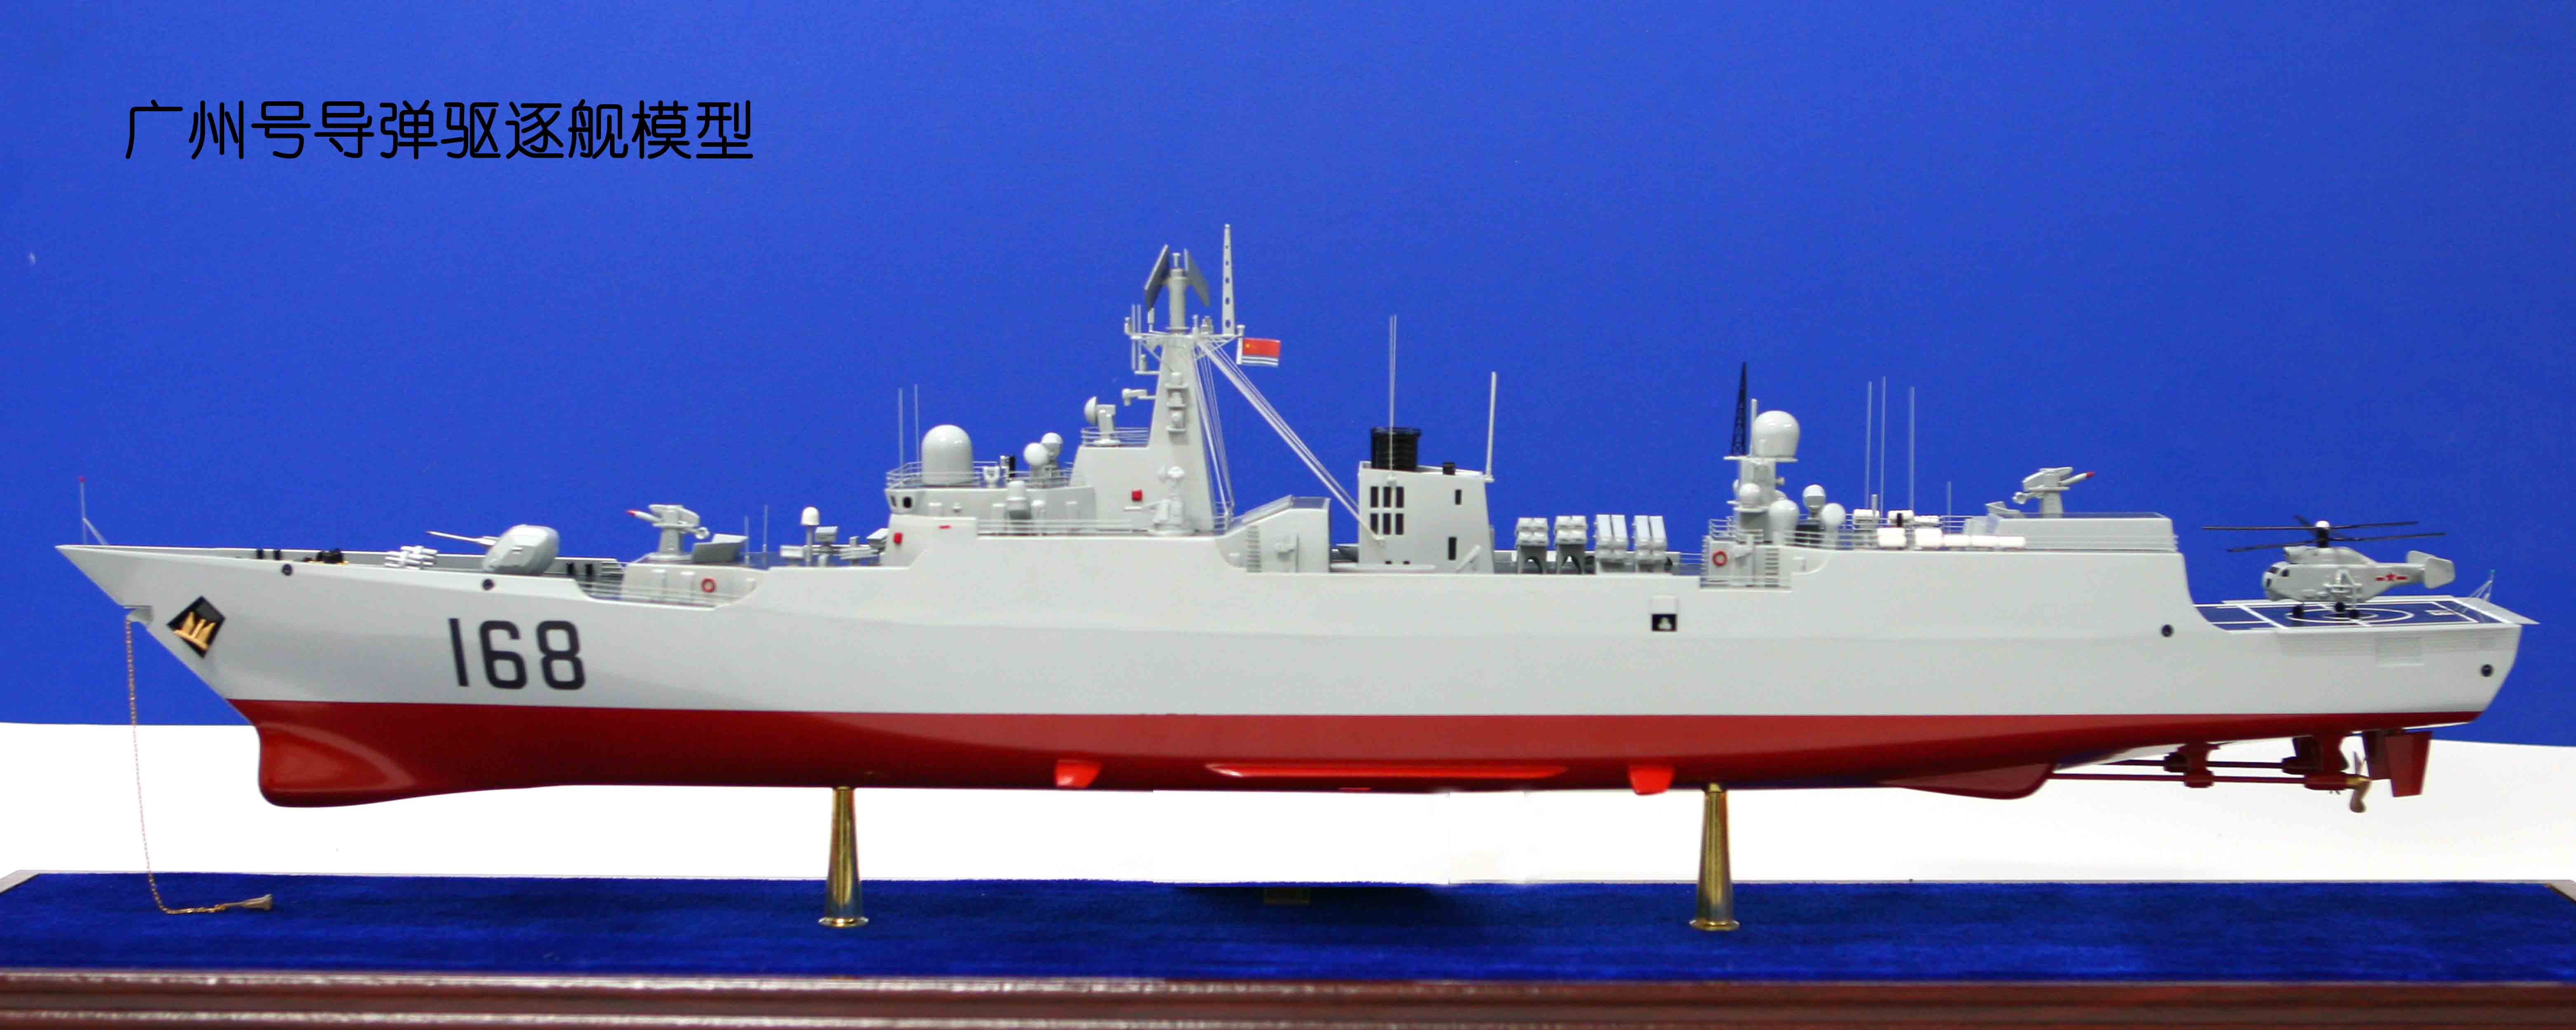 168广州舰 军舰模型 军事礼品 舰艇模型 1:200 开业庆典